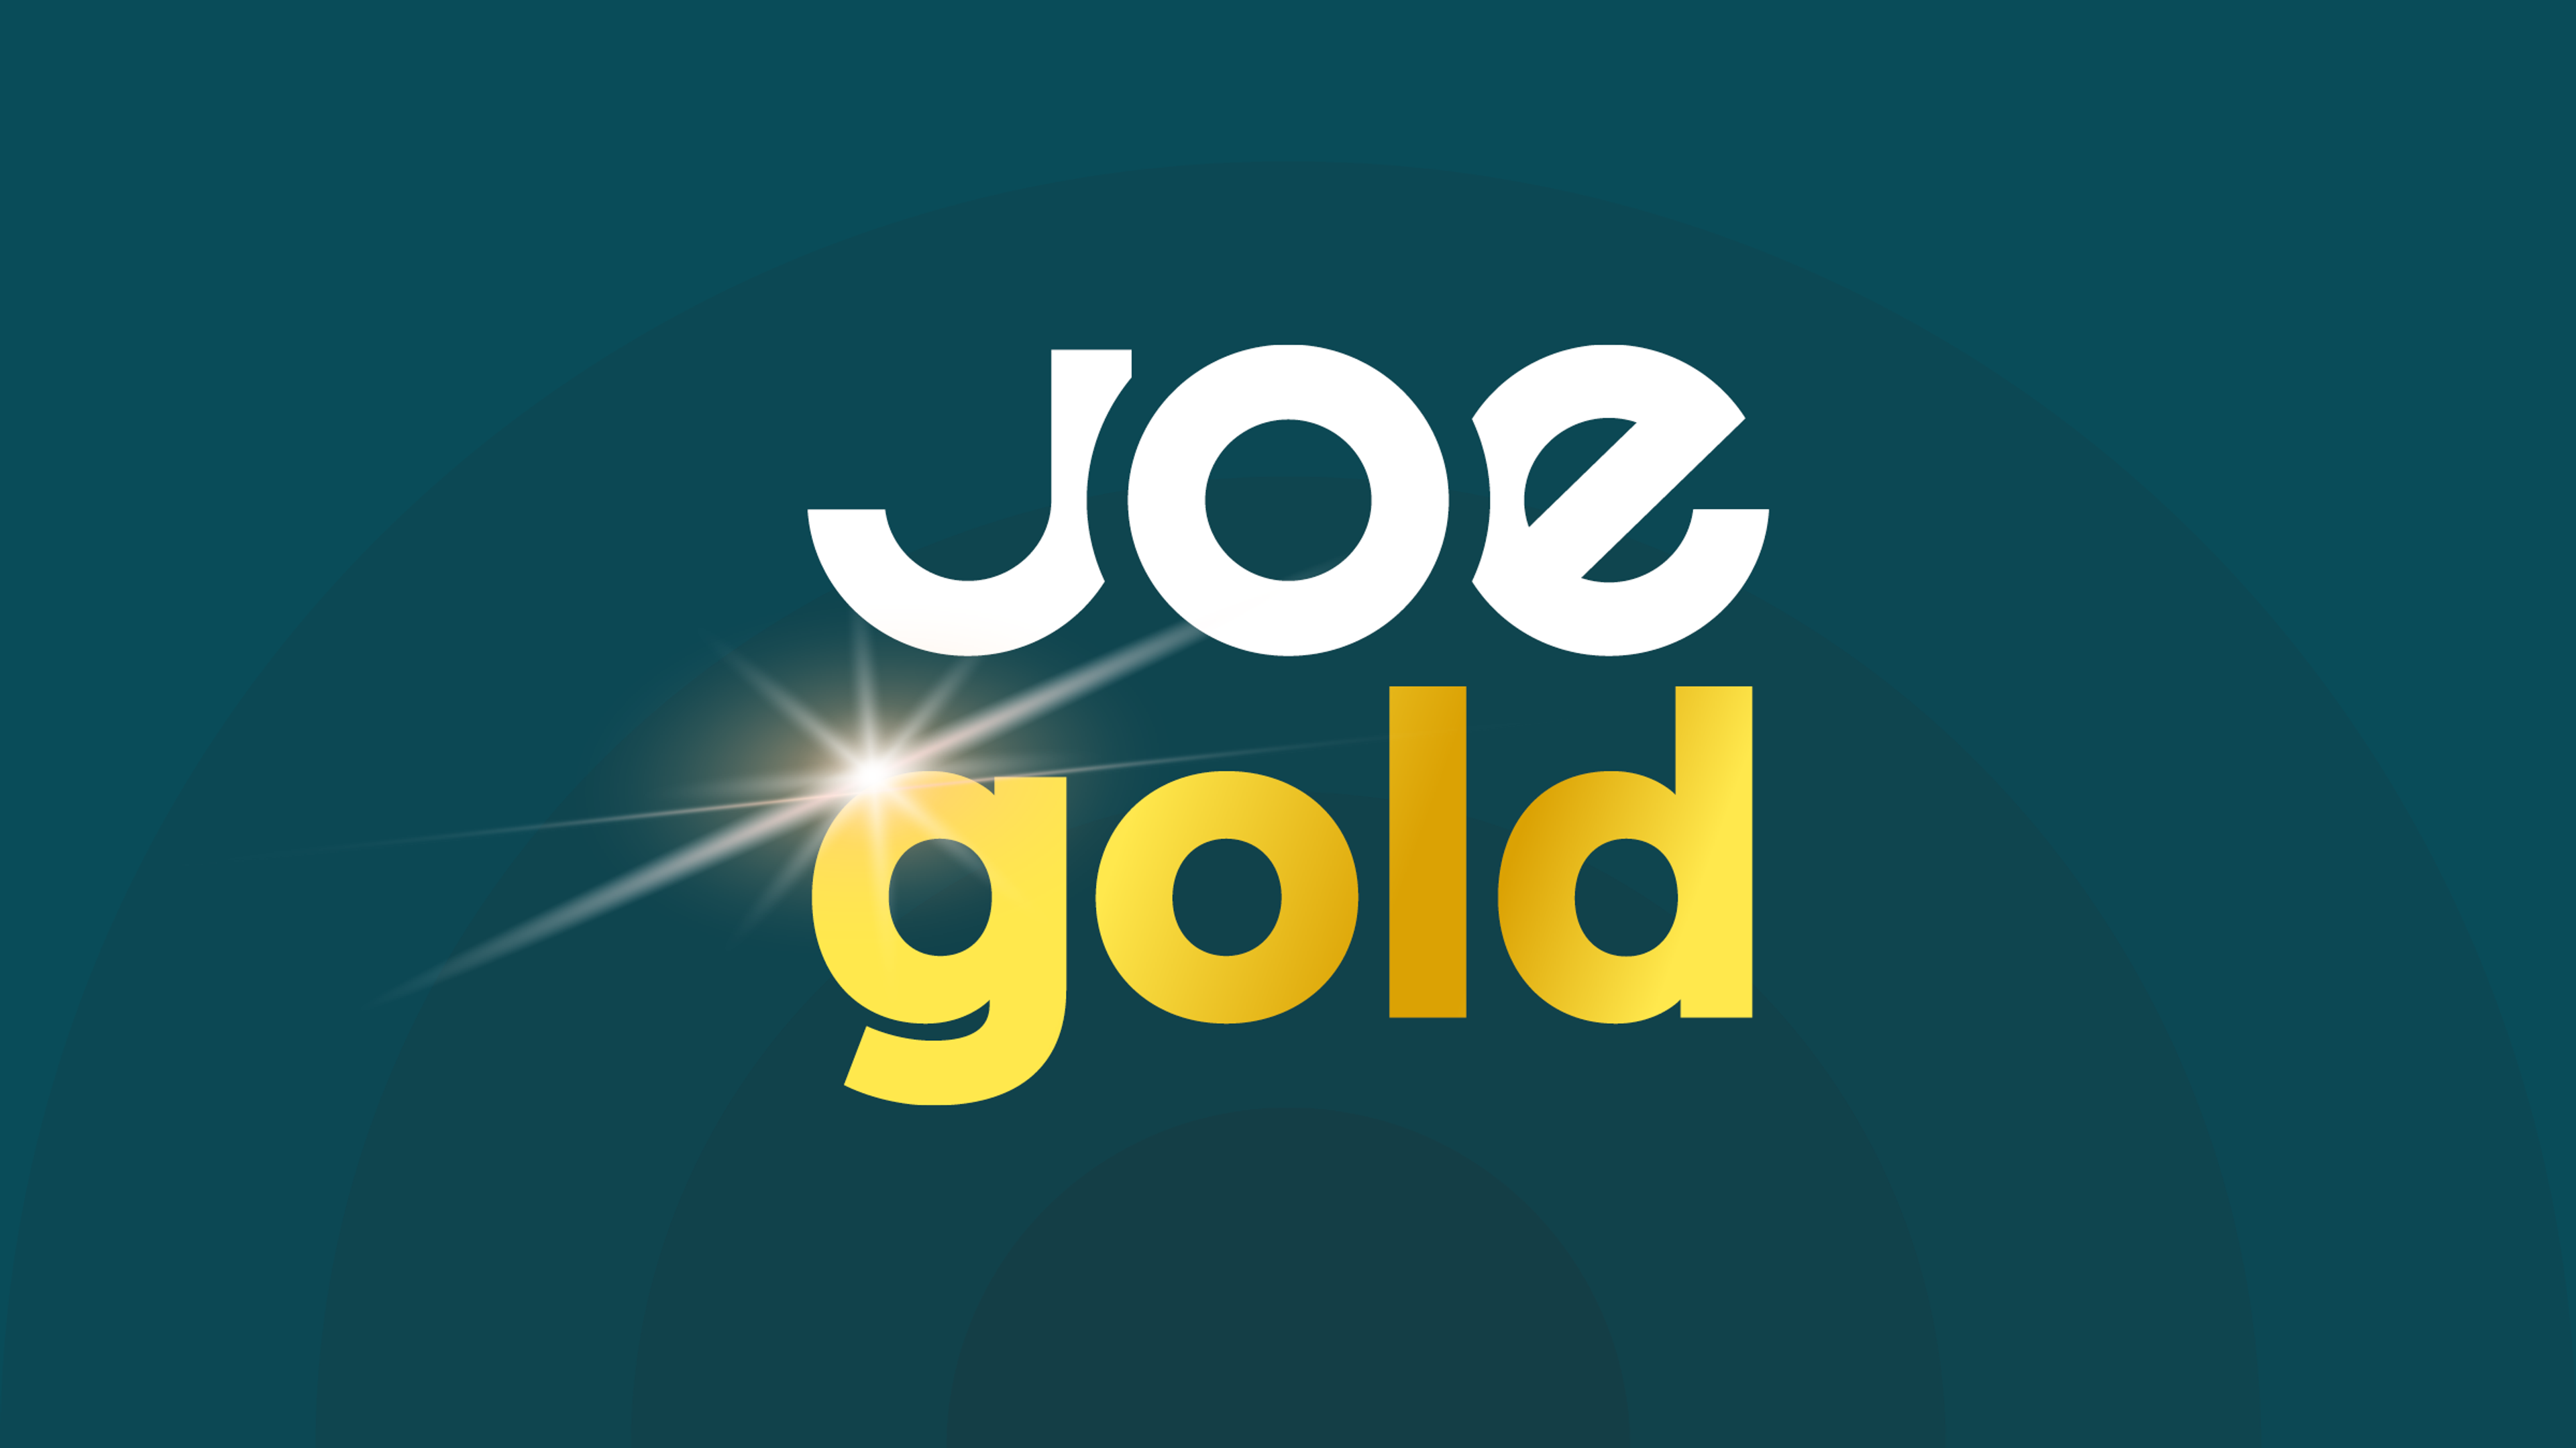 Joe Gold